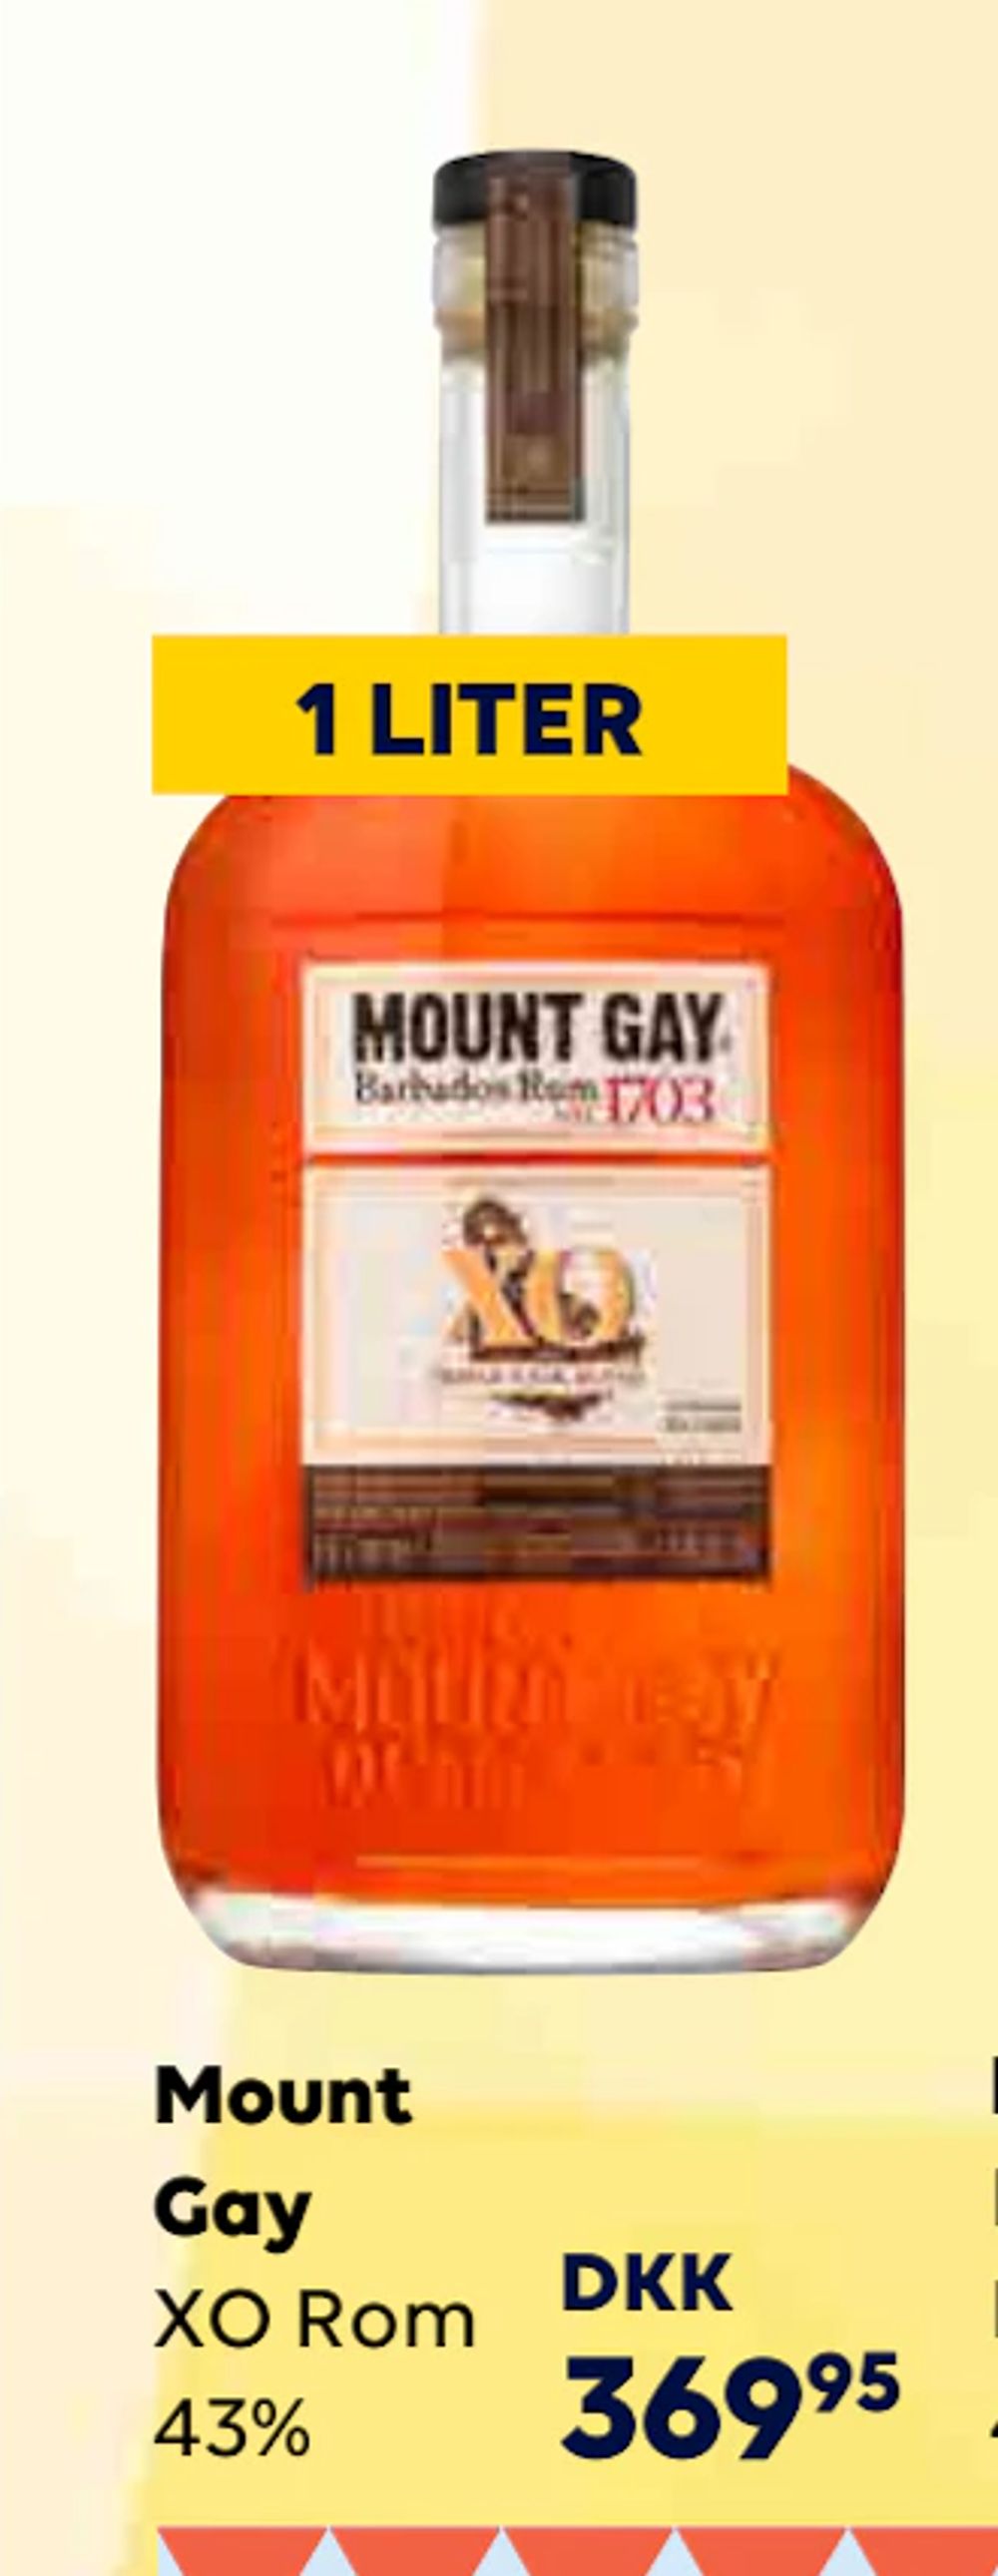 Tilbud på Mount Gay fra BorderShop til 369,95 kr.